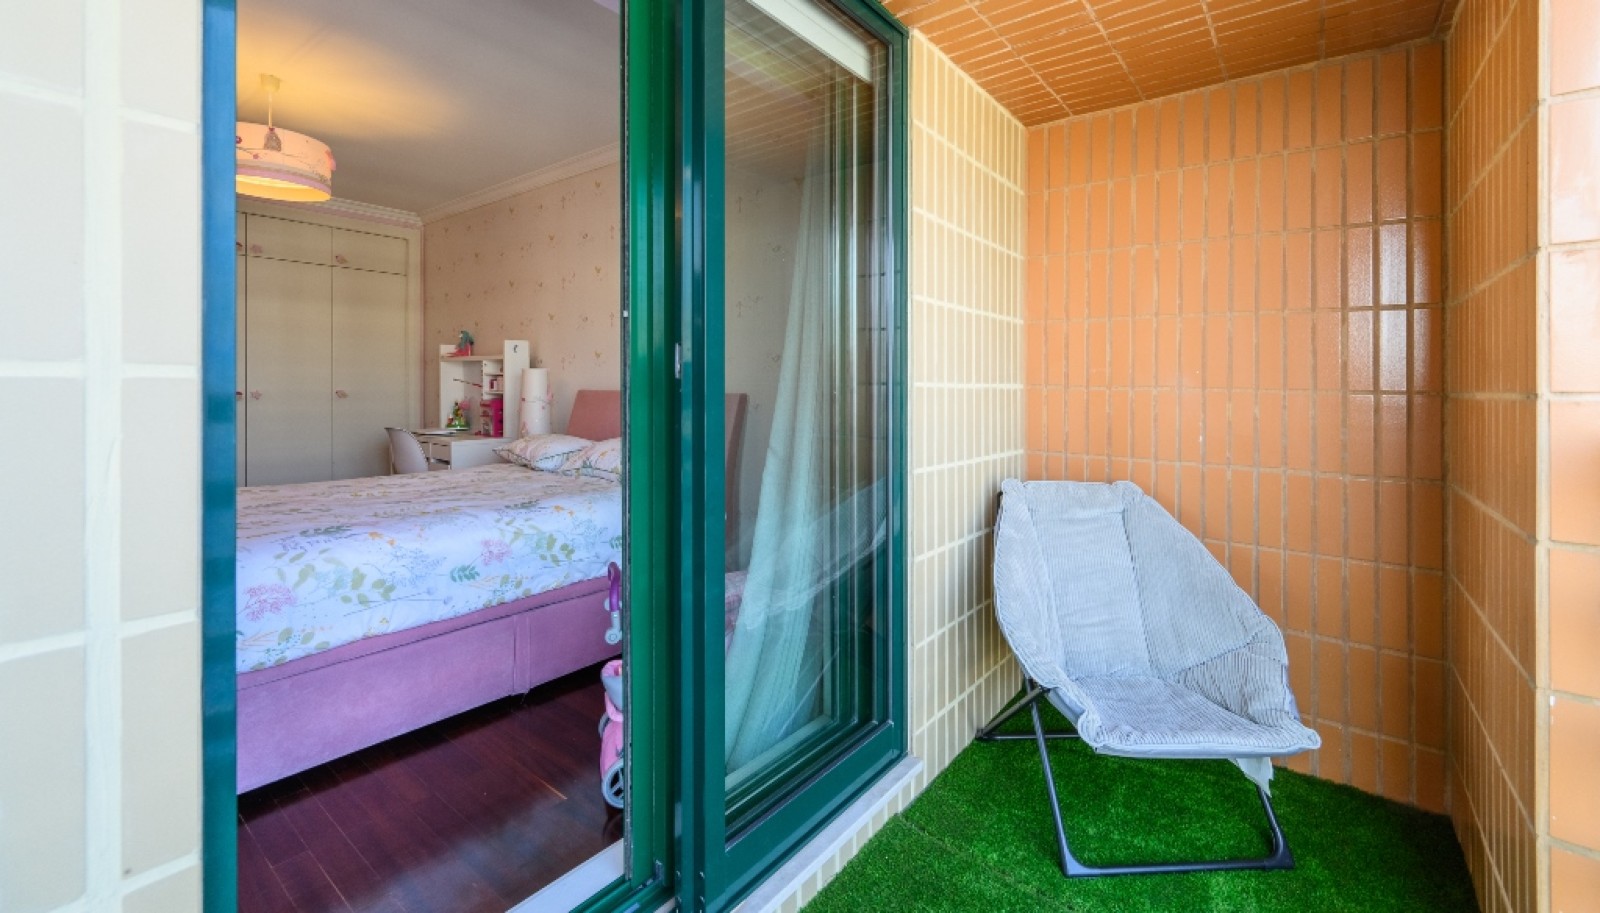 Appartement 3+1 chambres à vendre à Afurada, Vila Nova de Gaia, Portugal_251495